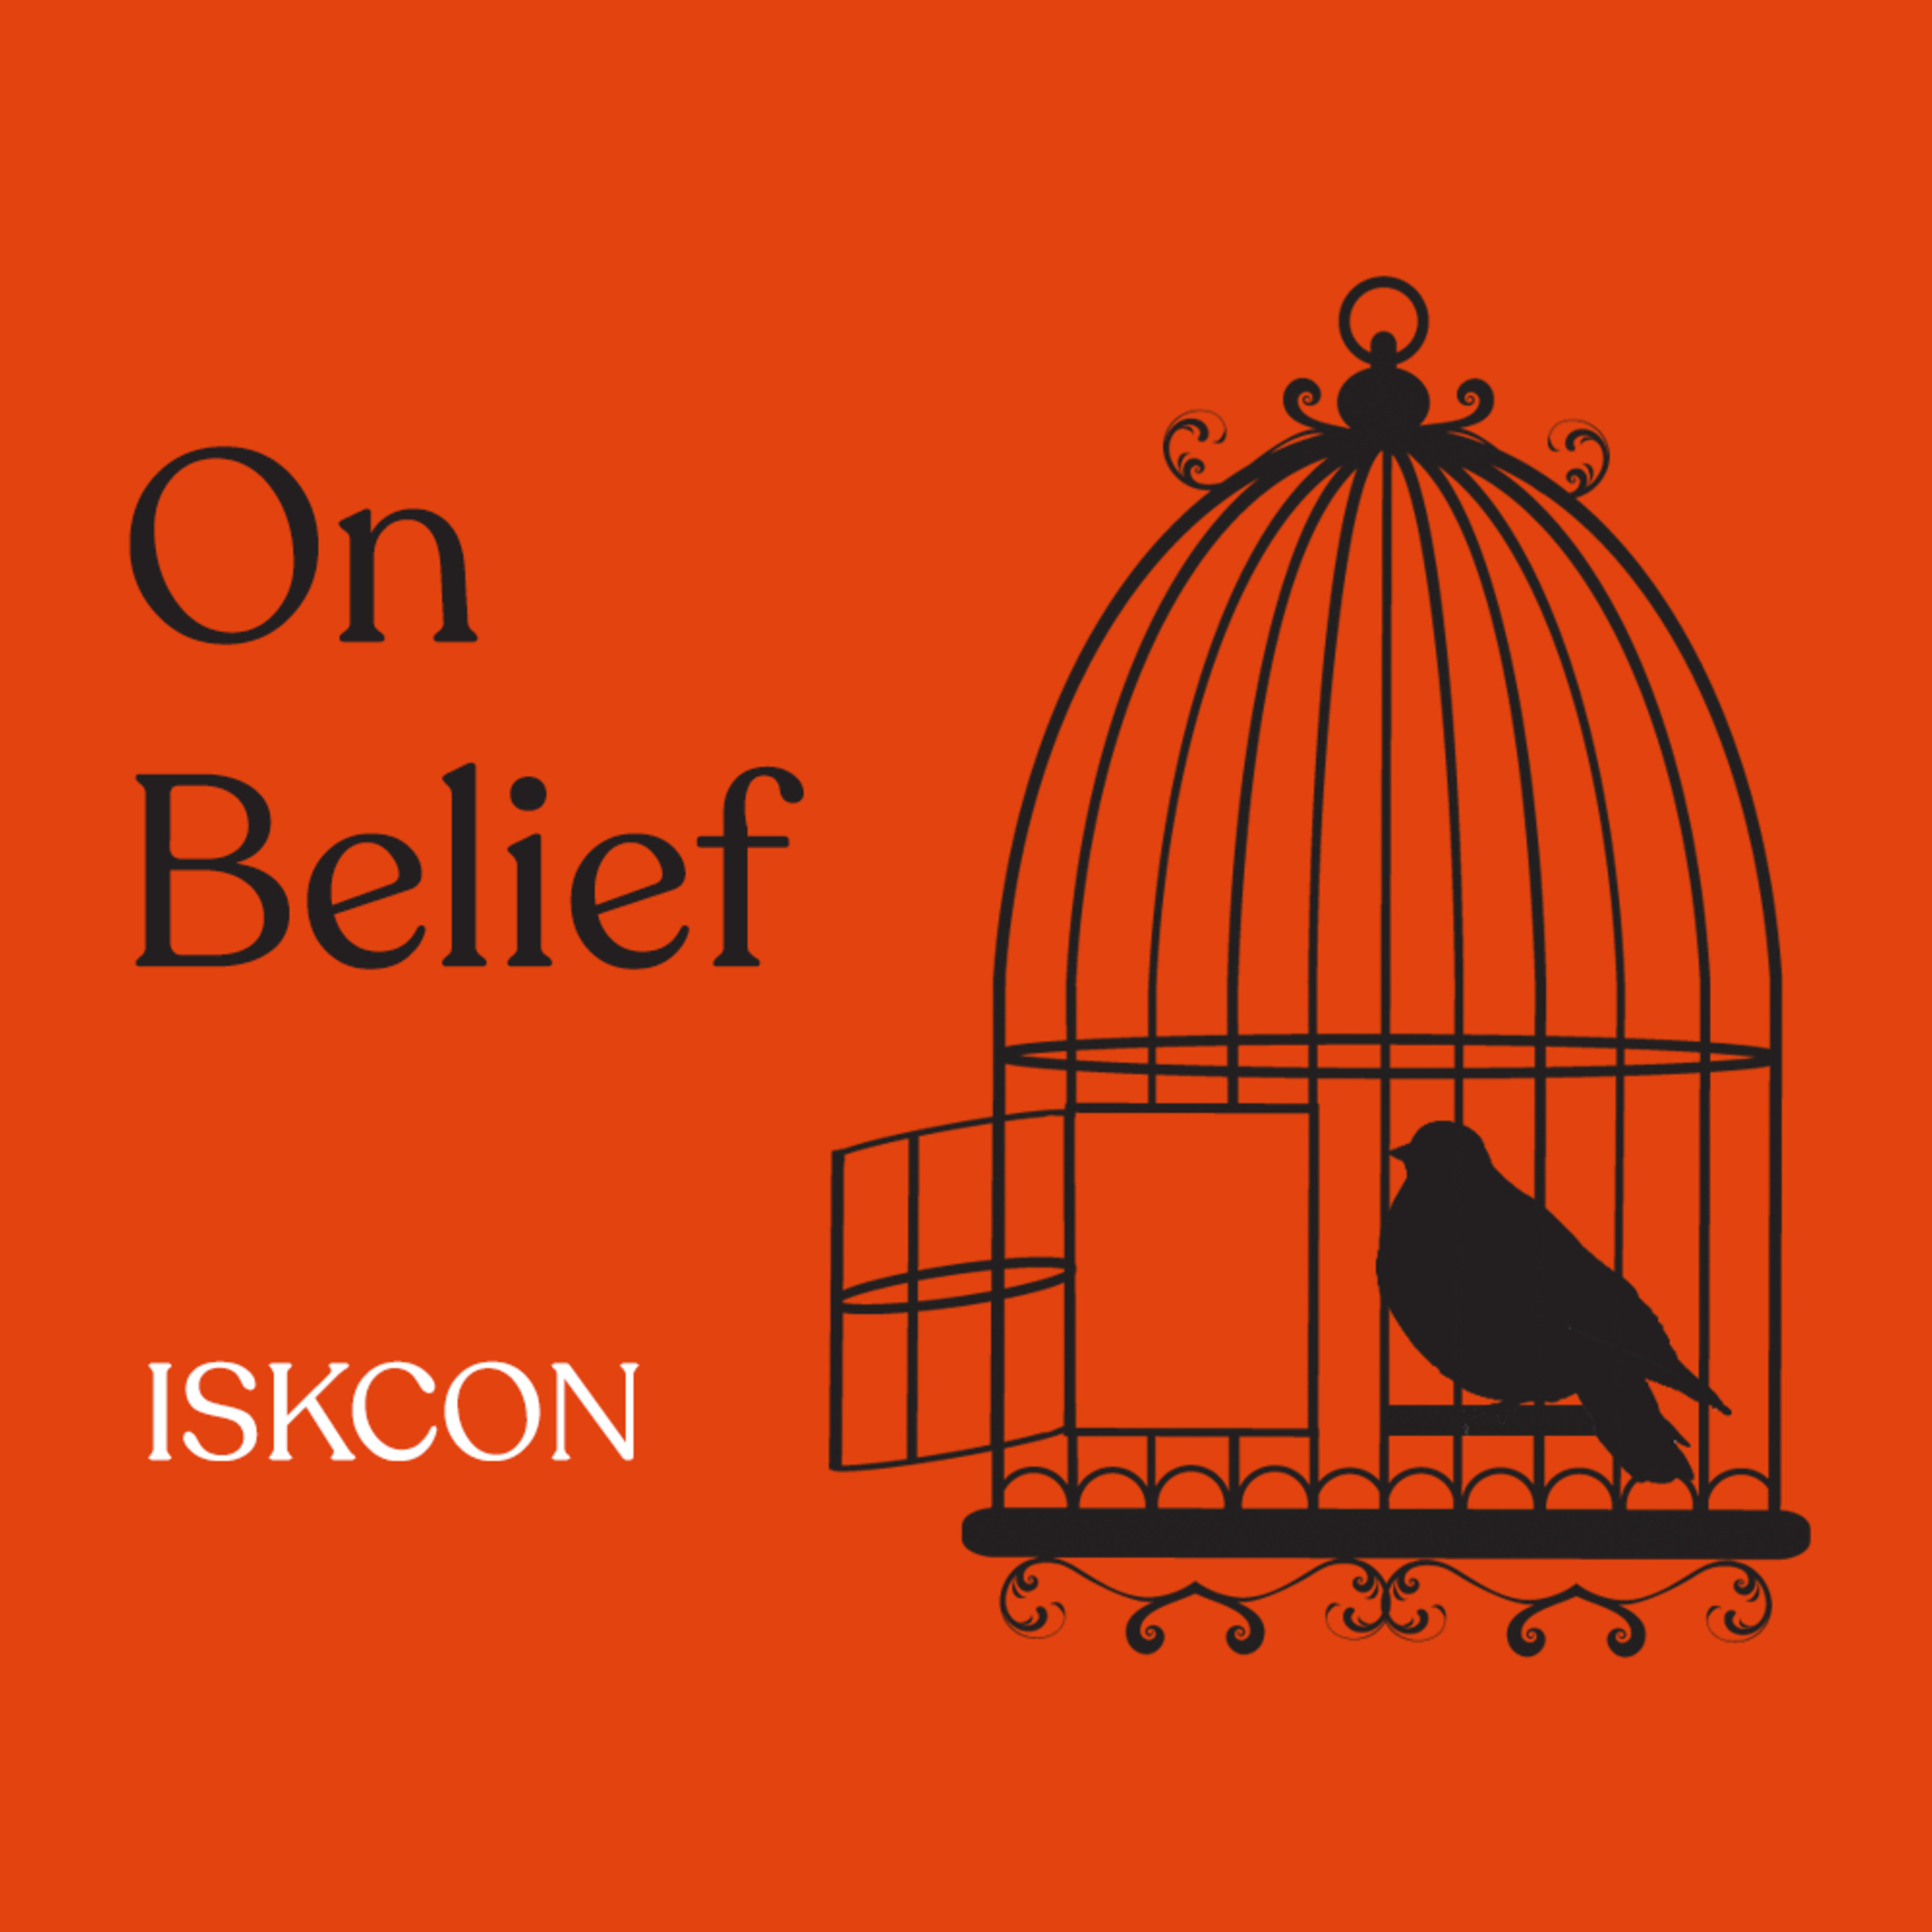 Episode 222: ISKCON (Hare Krishnas) Part 2